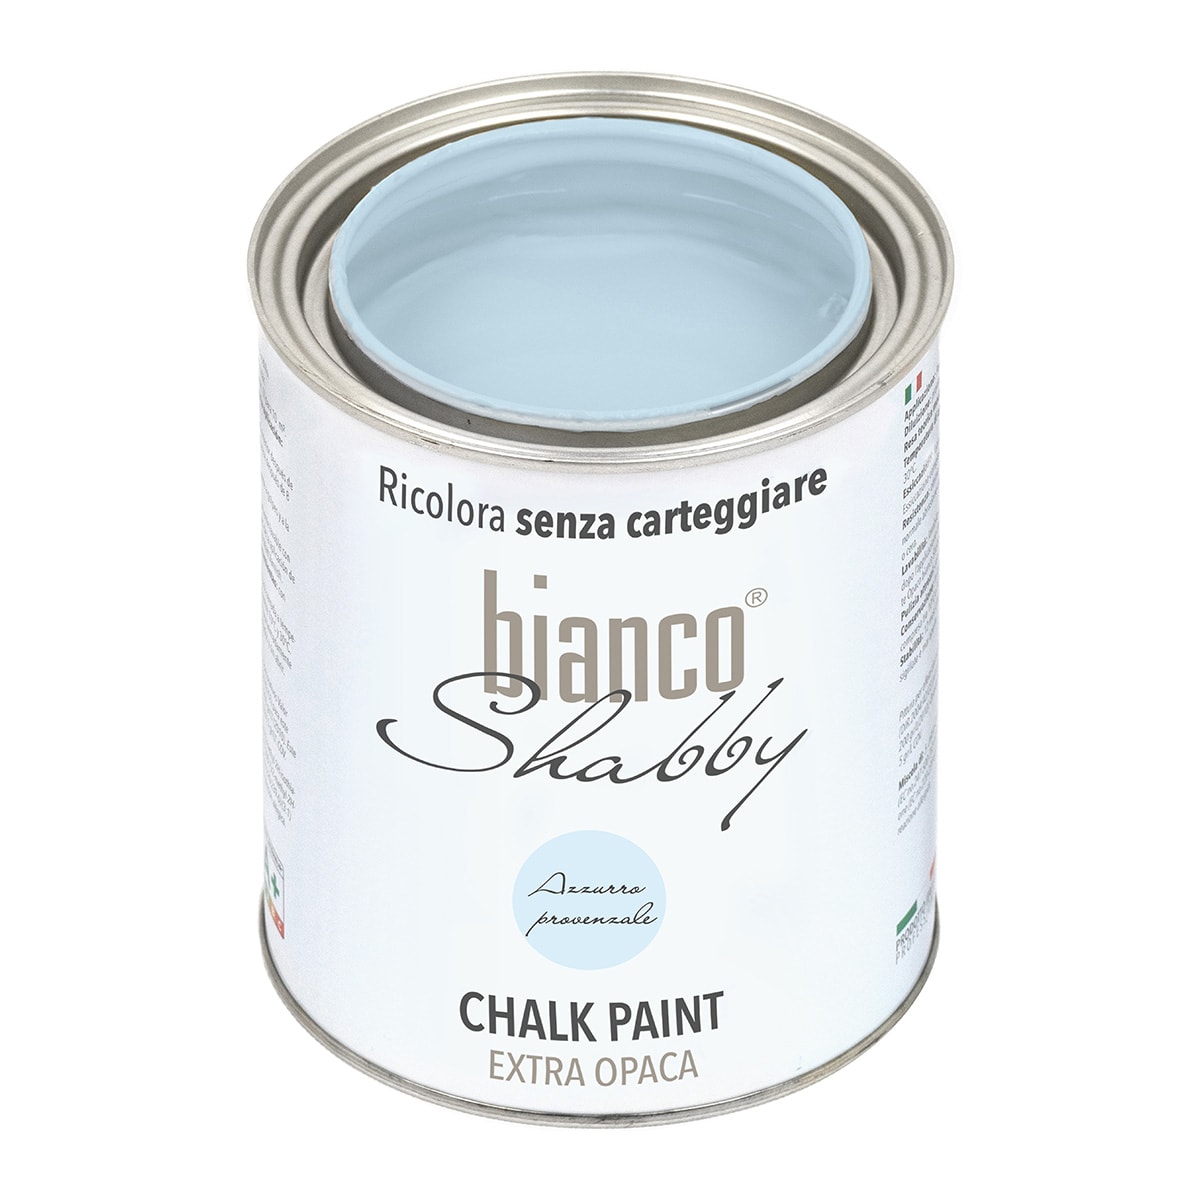 Chalk Paint Azzurro Provenzale-bianco Shabby ricolora senza carteggiare